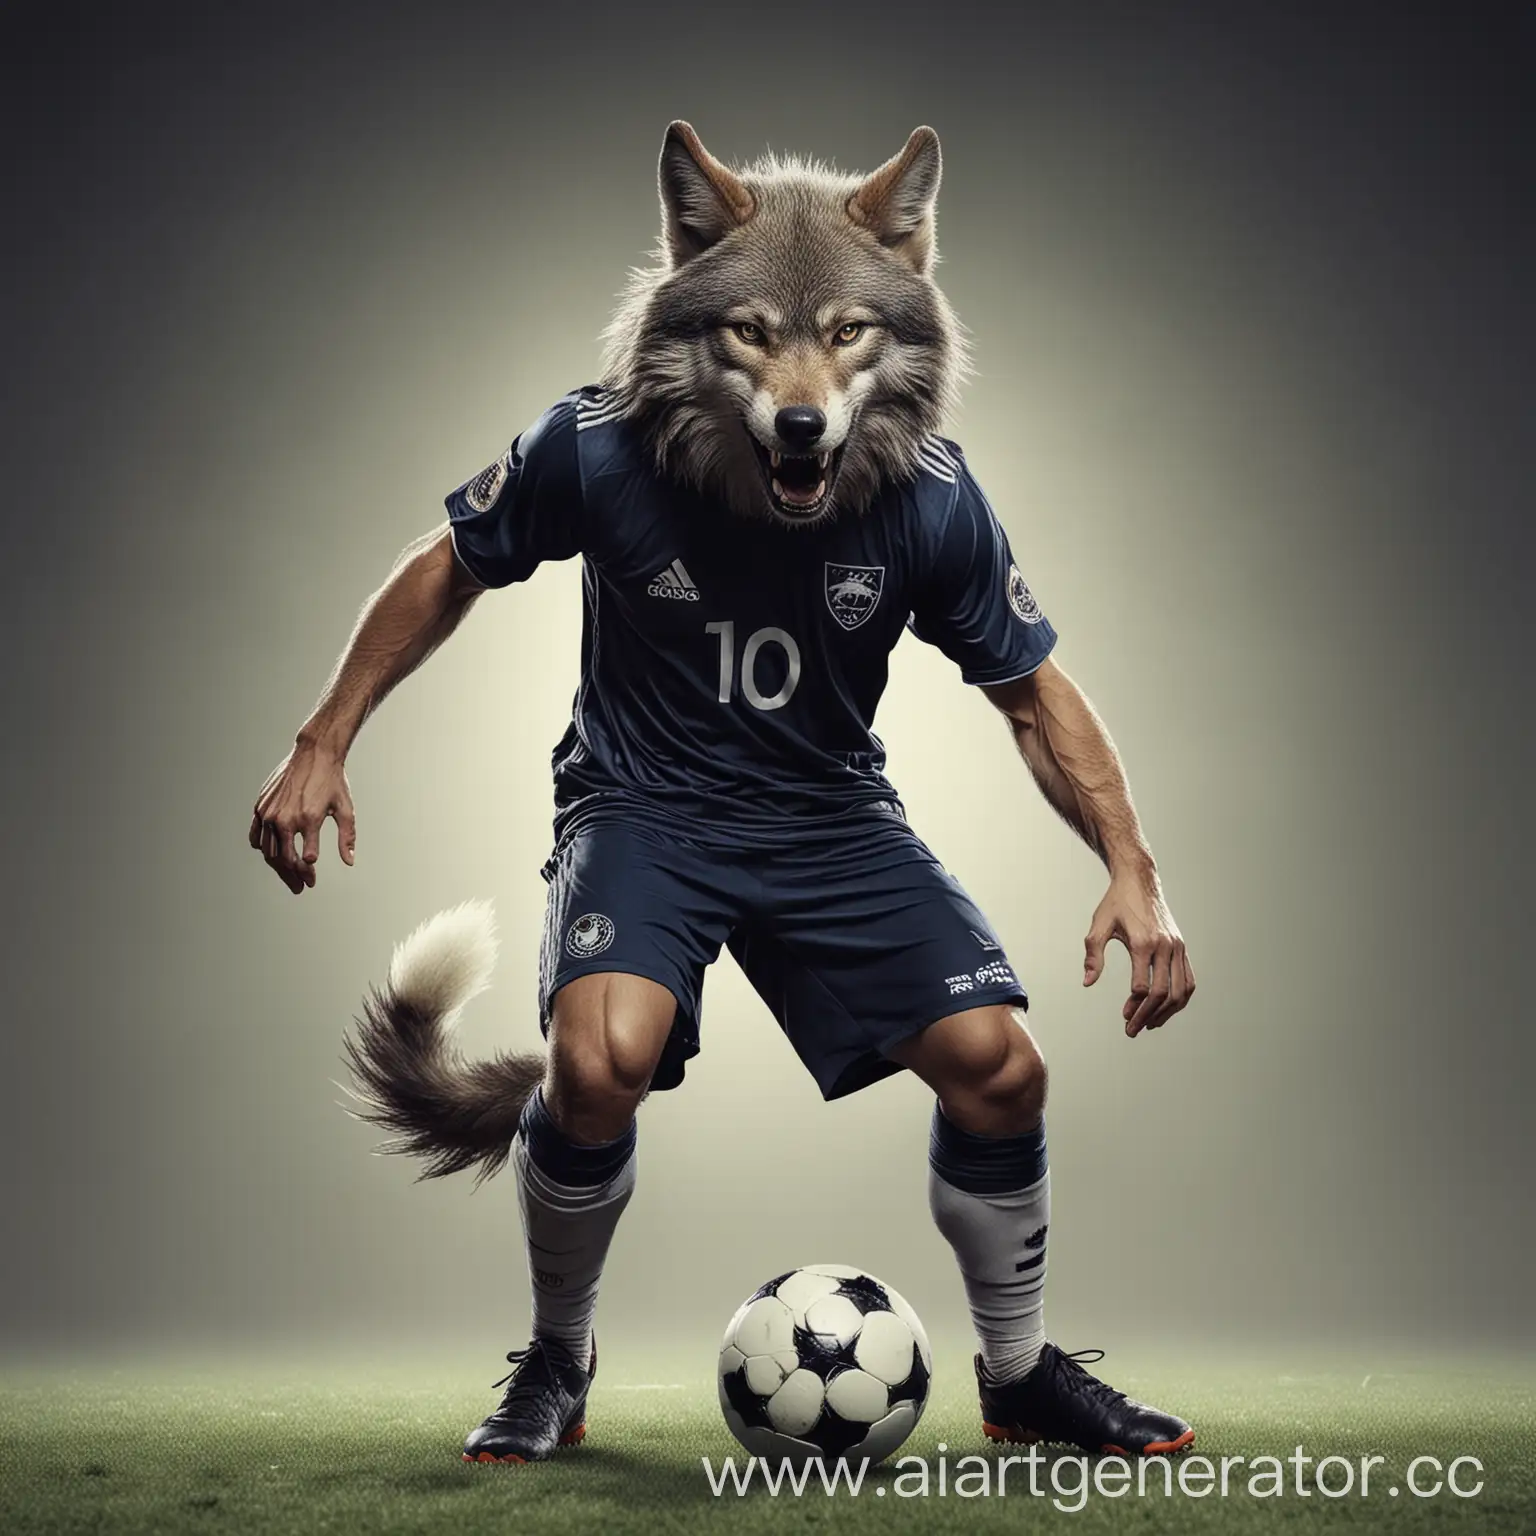 изображение футболиста в виде волка